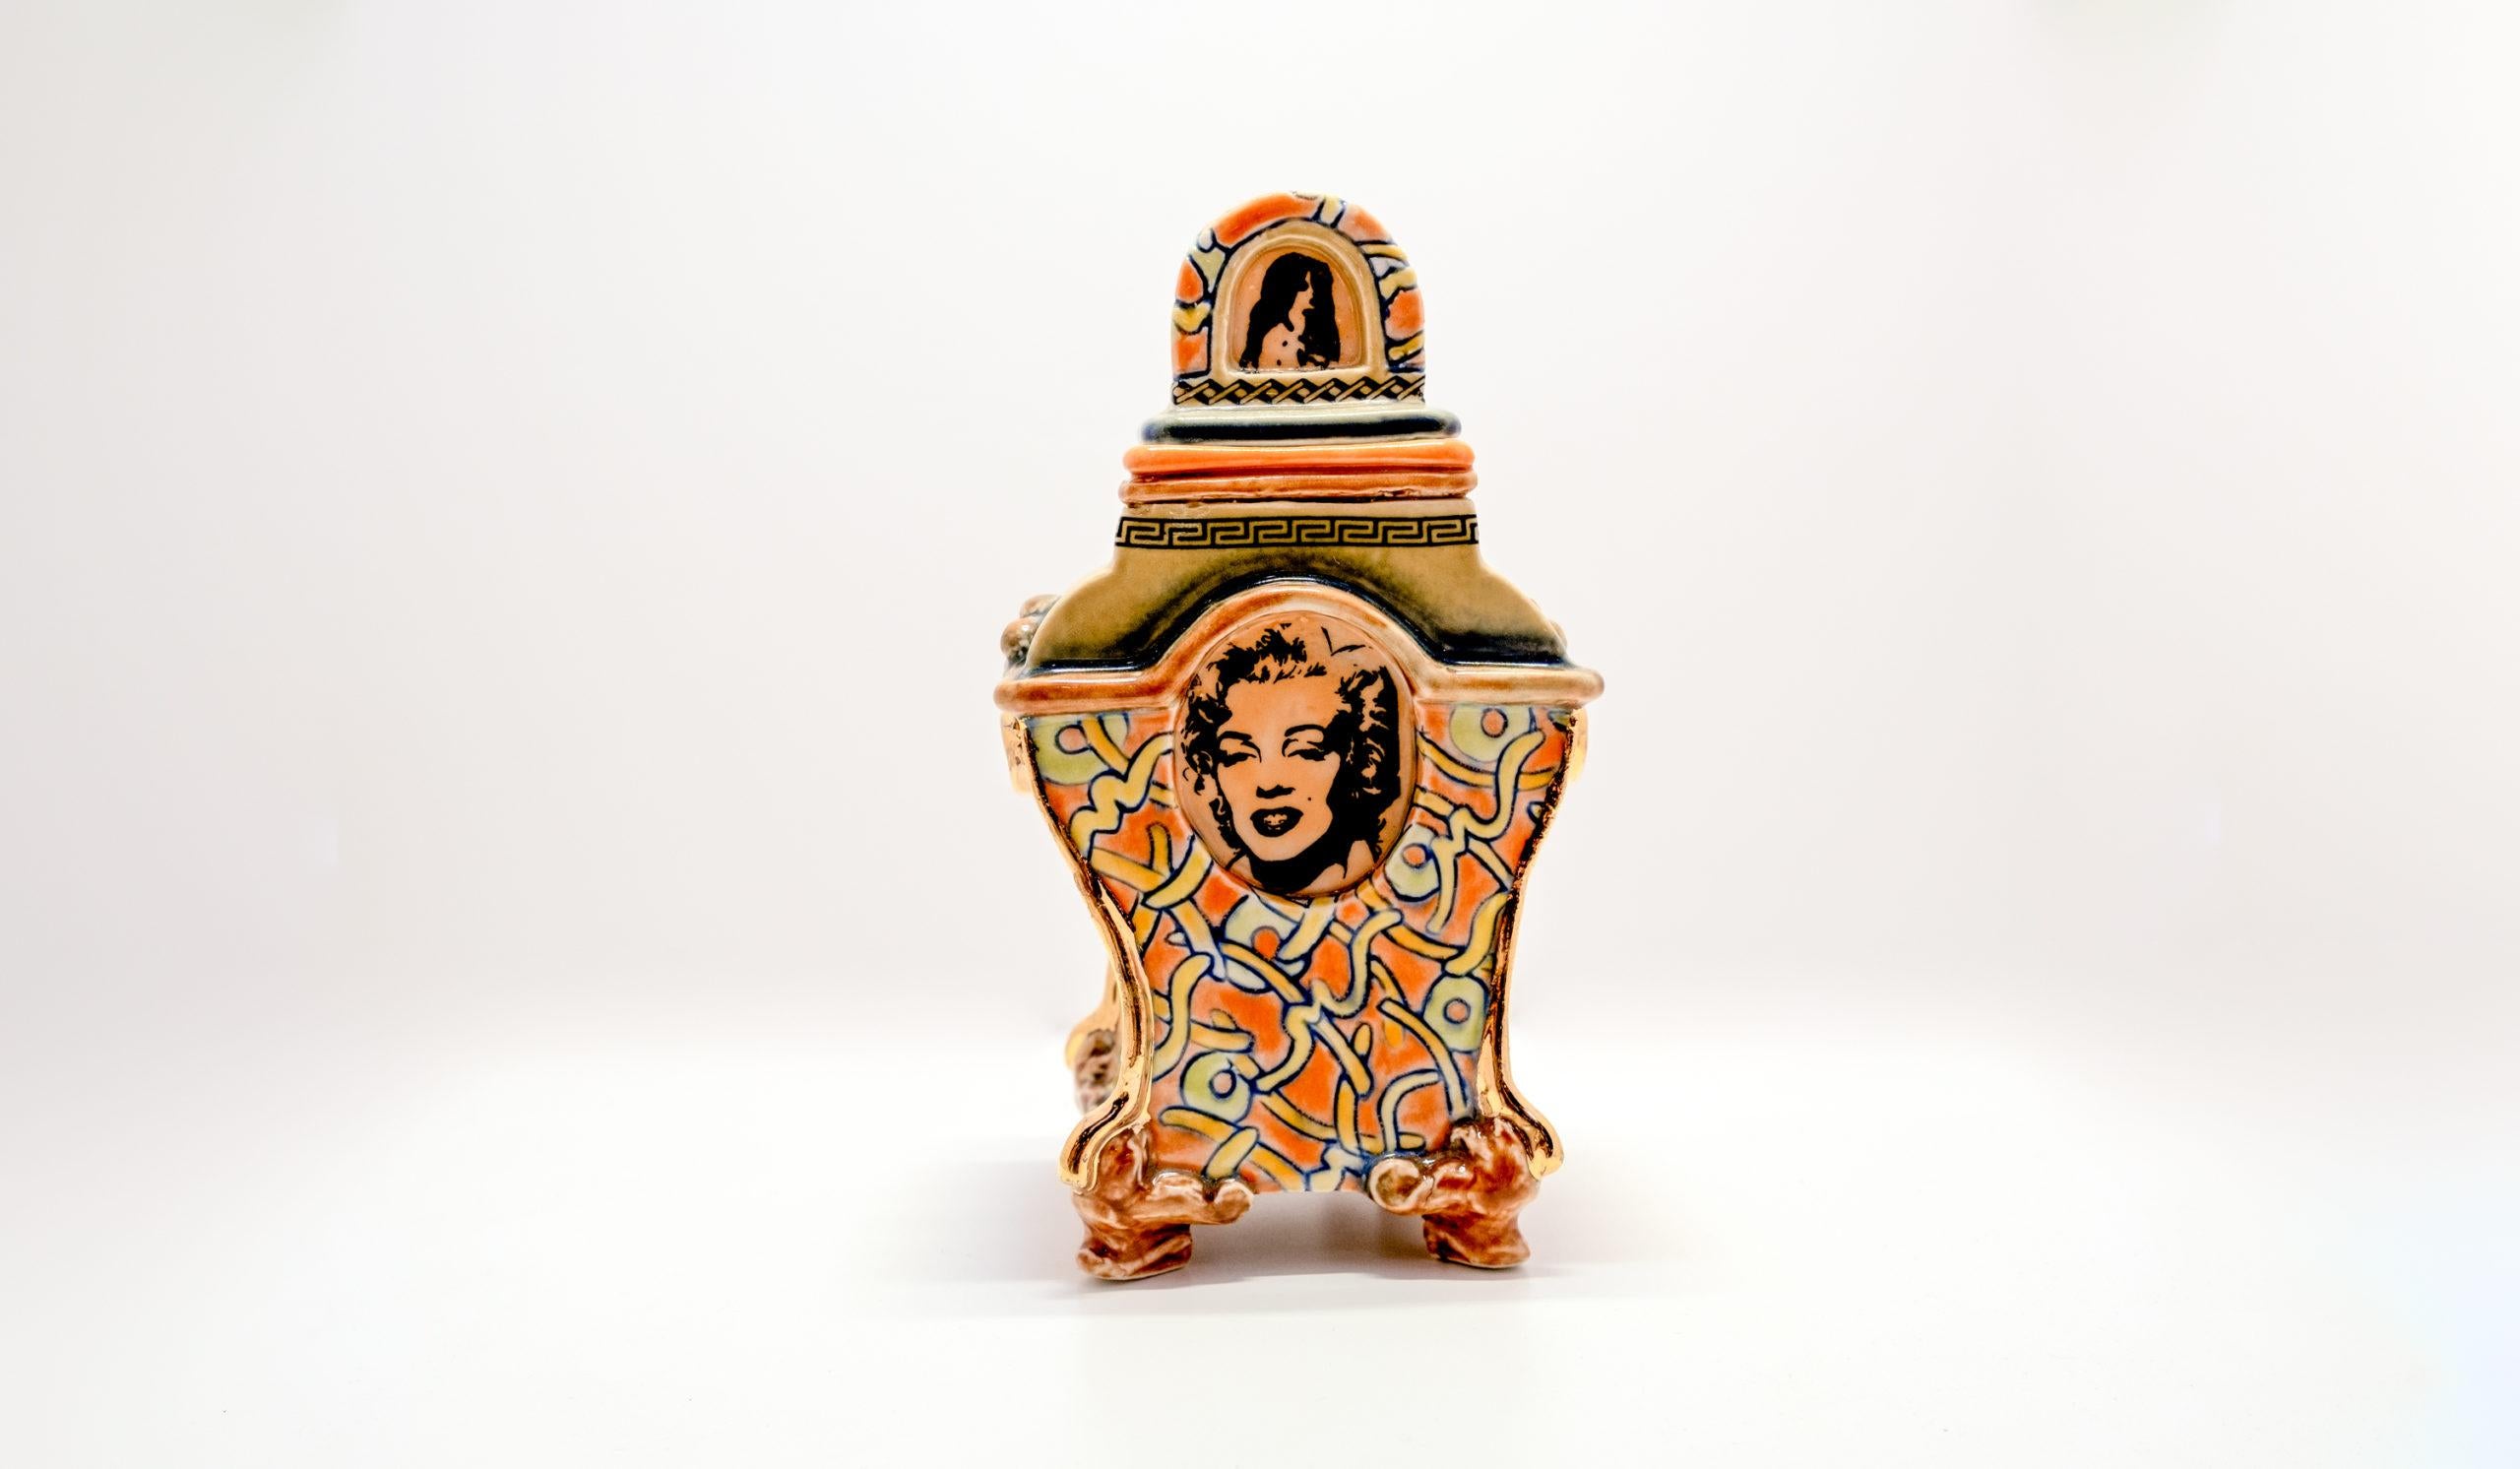 Dies ist ein einzigartiges, funktionales Gefäß des Künstlers Ron Carlson aus San Diego. Auf diesem Behälter mit Deckel ist die amerikanische Popkultur-Ikone Marilyn Monroe abgebildet. Dieses Keramikgefäß ist orange mit Grüntönen und ist 6,5 Zoll